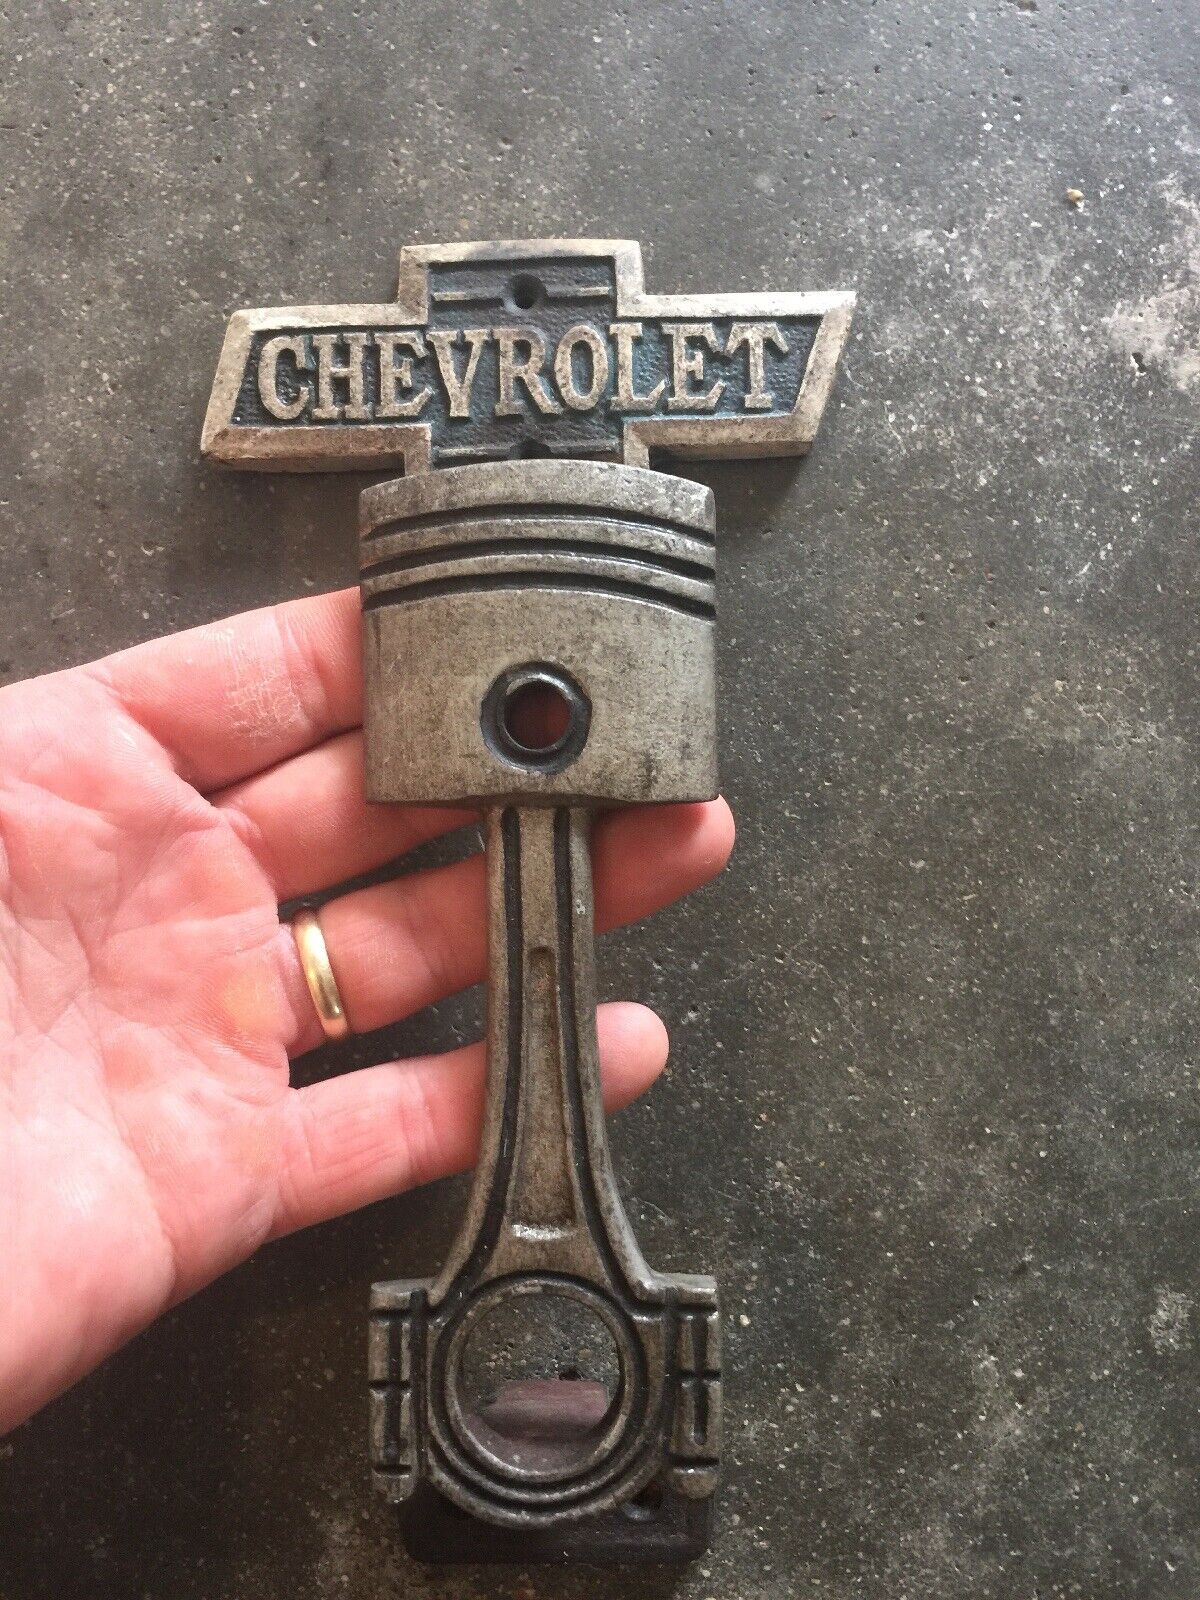 Chevy Chevrolet Cast Iron Door Handle 9INCH Patina Collector Auto Car HOTROD